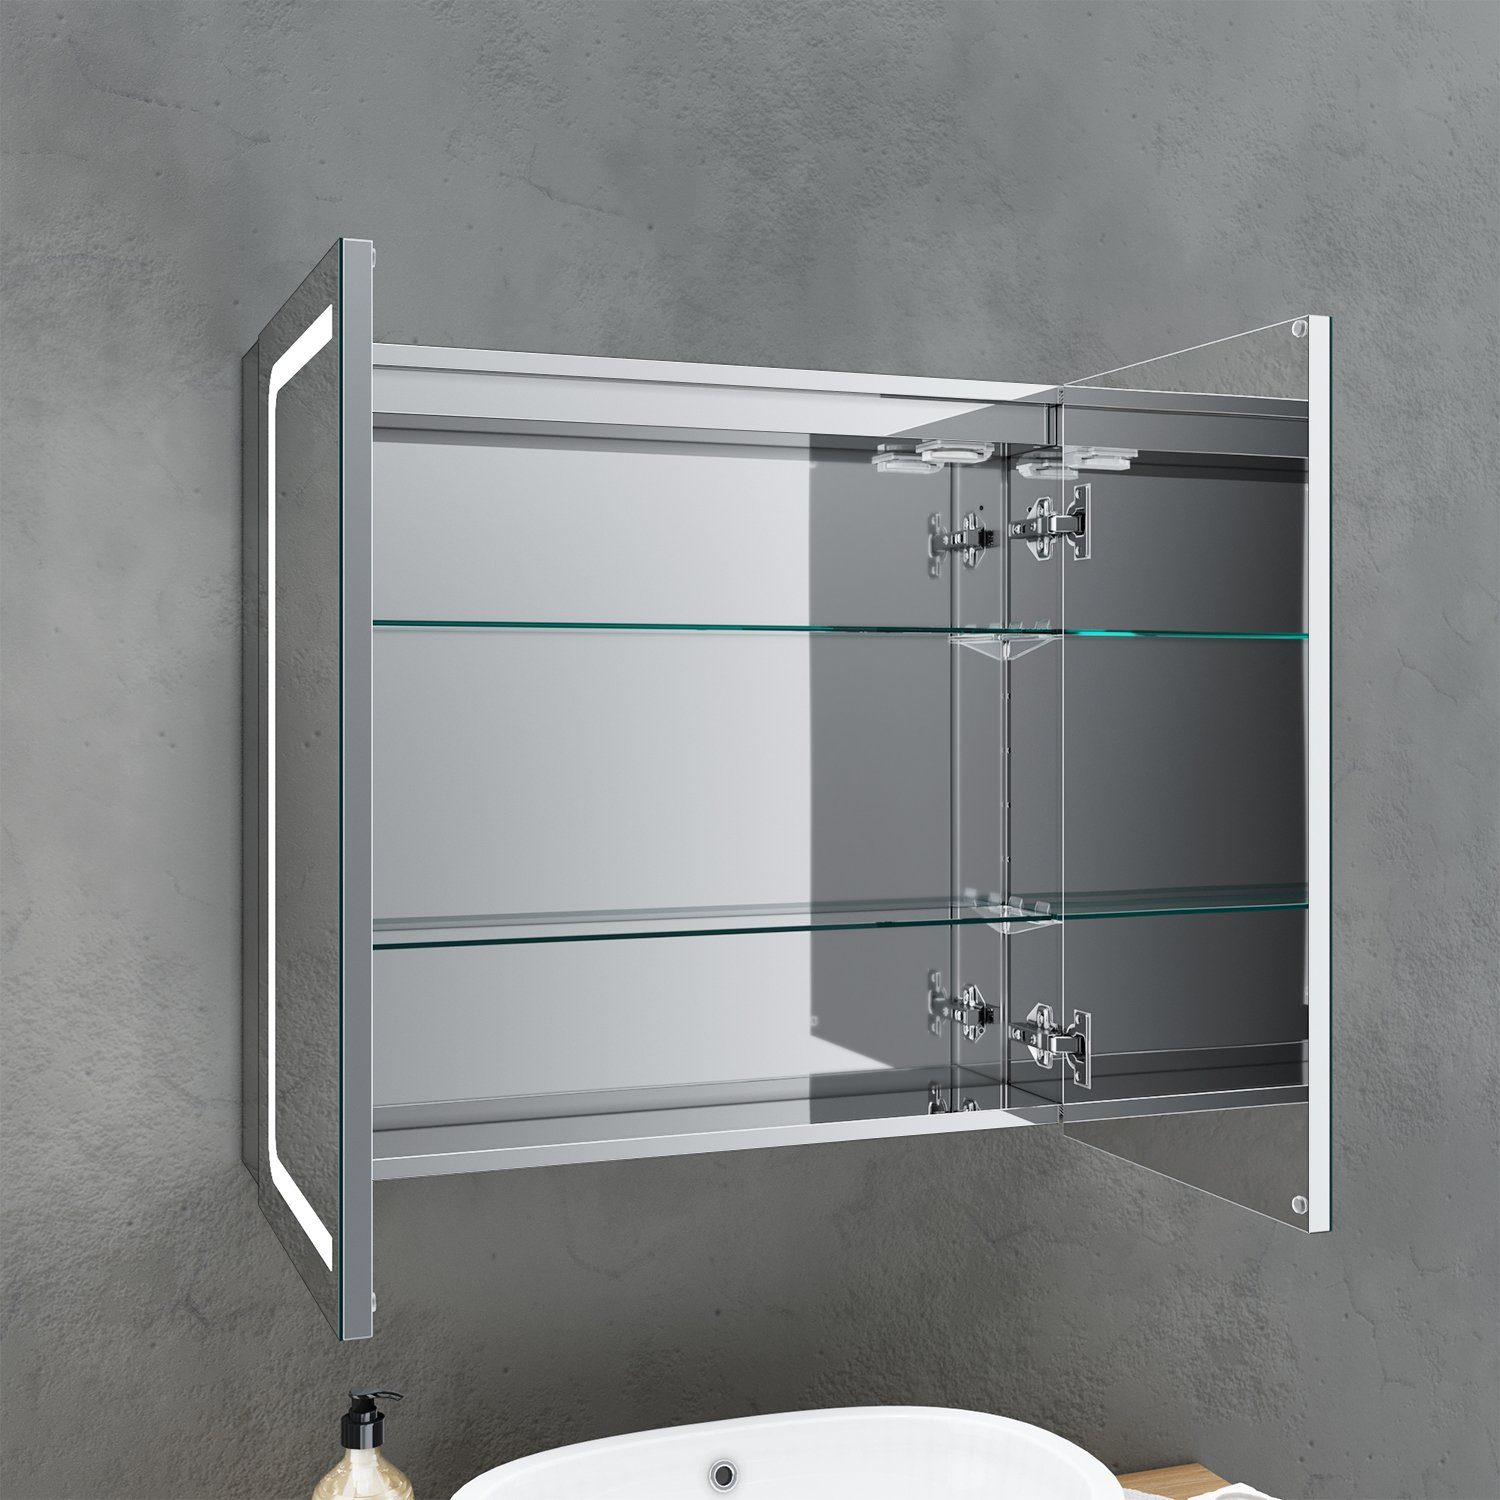 SONNI Badezimmerspiegelschrank Spiegelschrank 2-türig Bad Steckdose, Badschrank, LED Breite Beleuchtung Badezimmerspiegelschrank 70cm Badspiegel